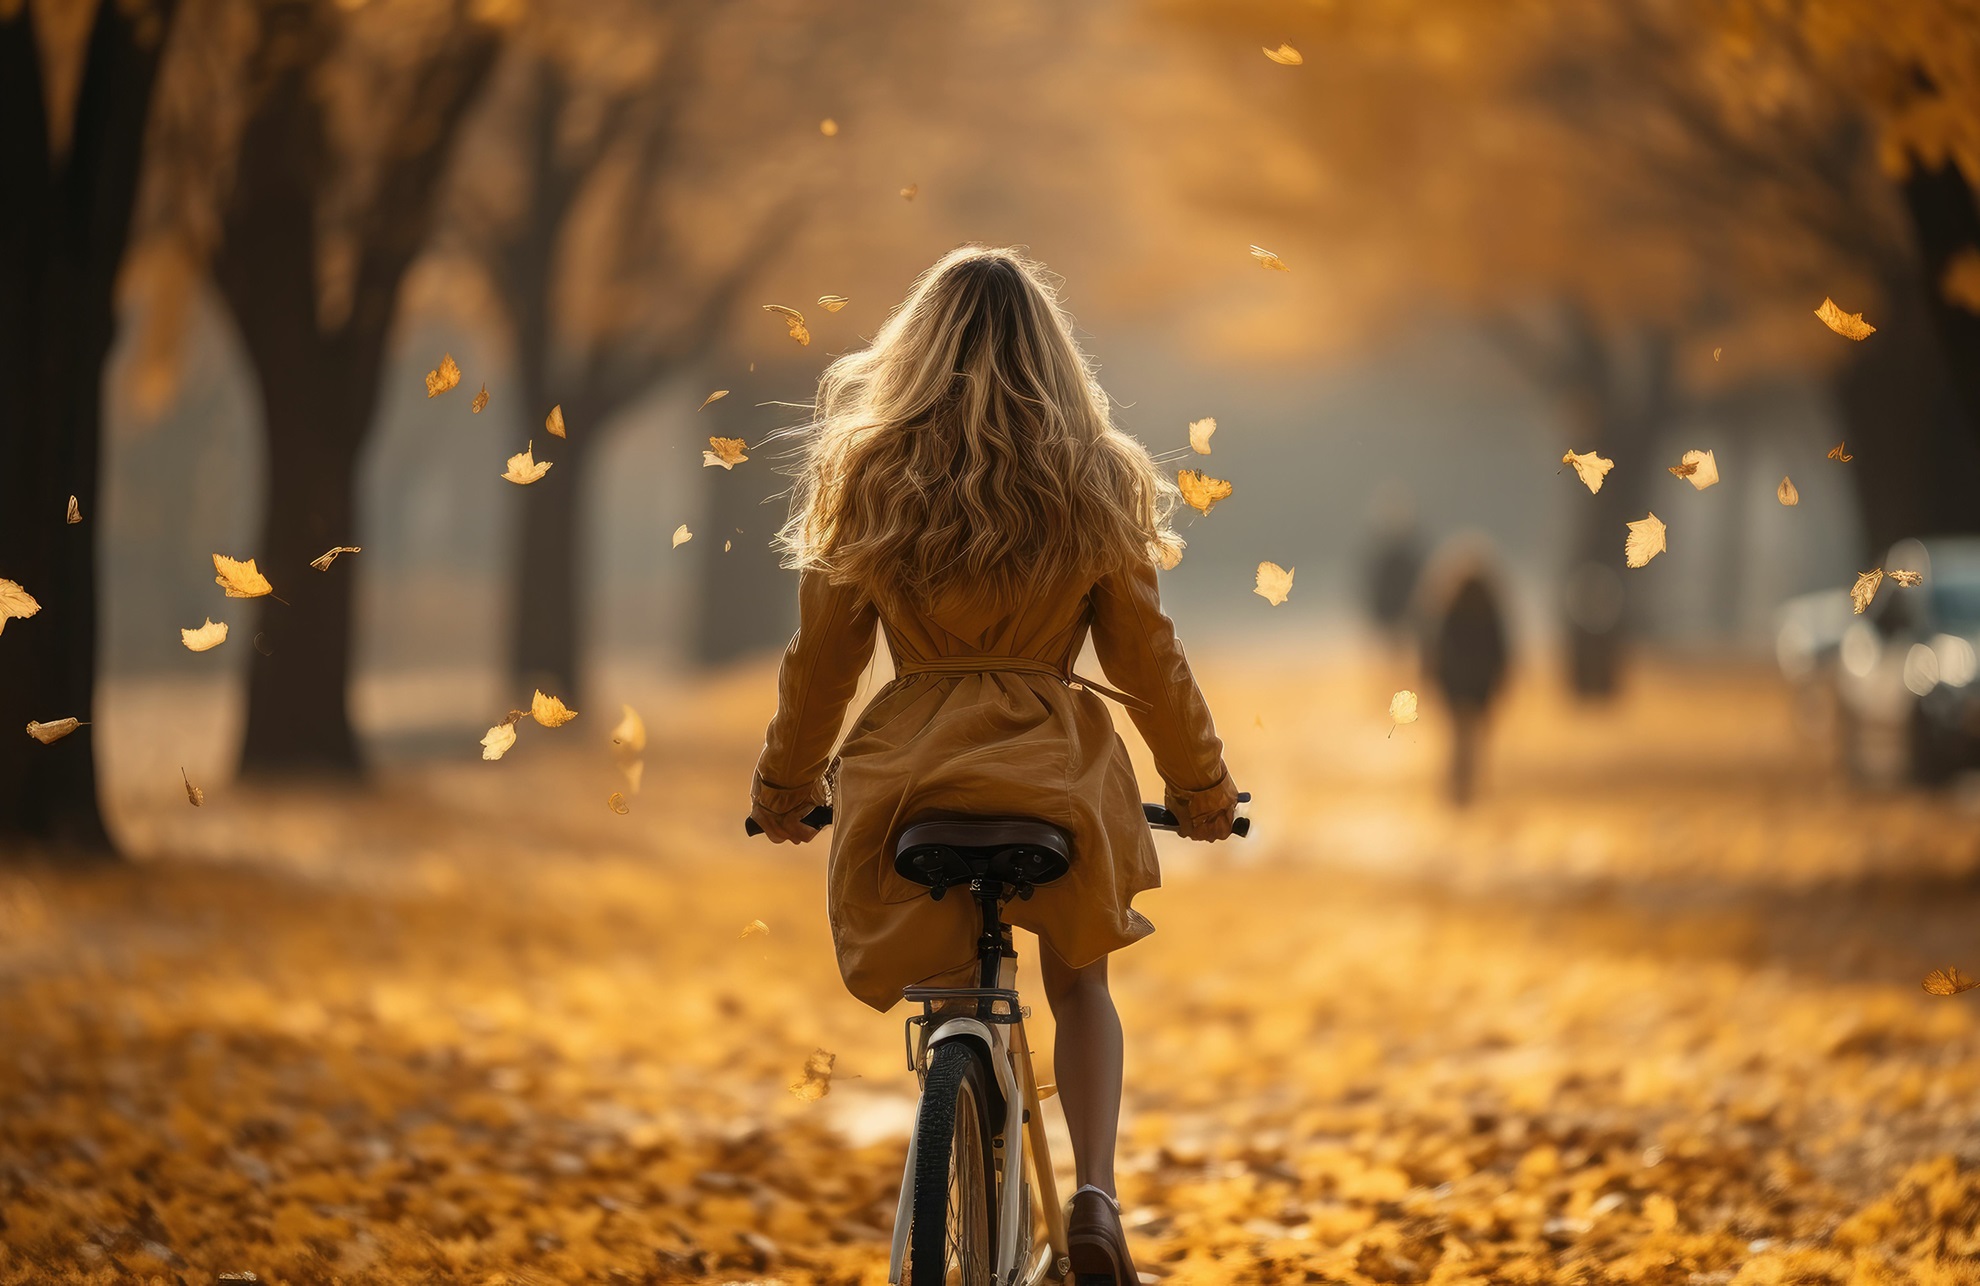 Girl on bike in fall foliage